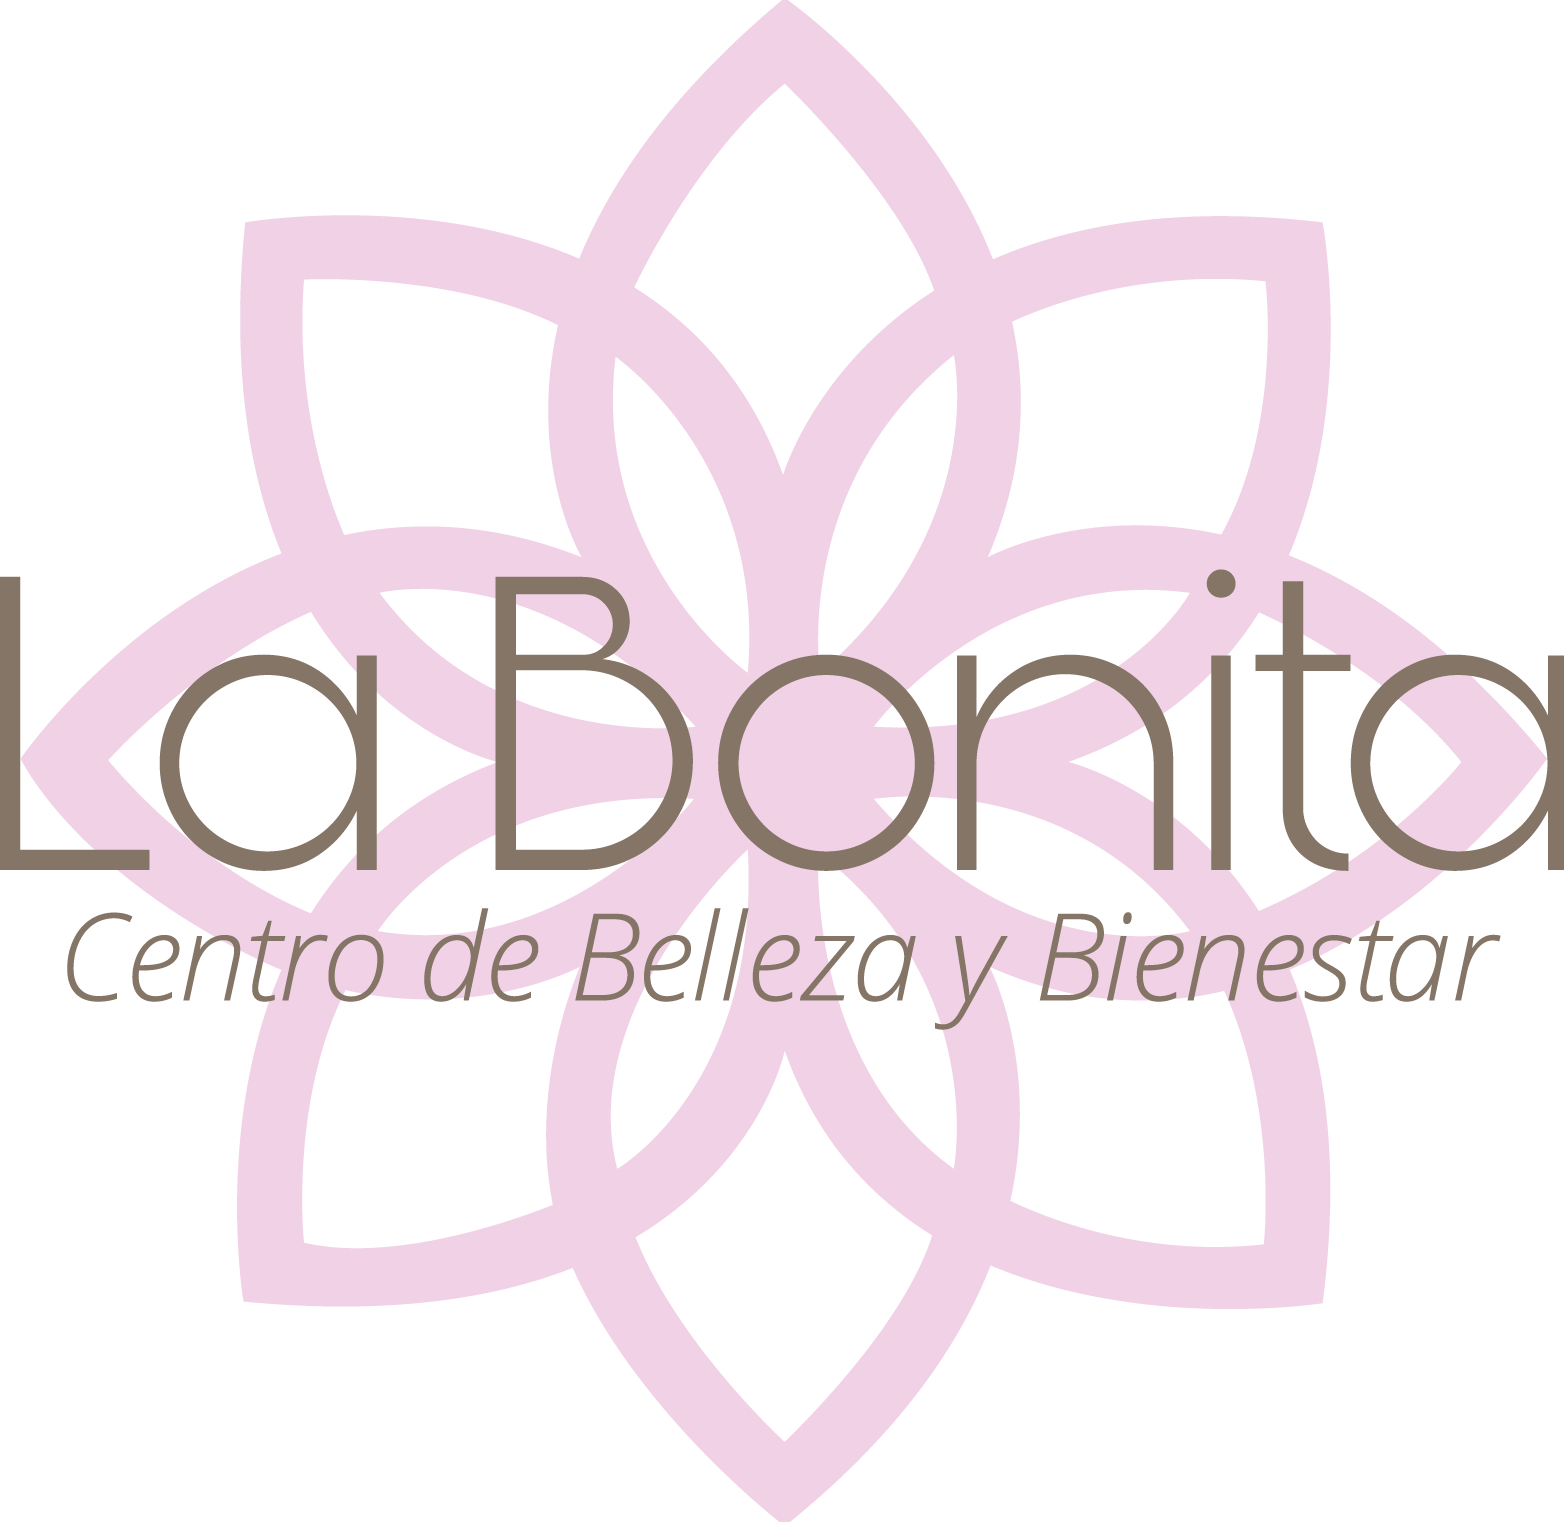 LA BONITA CENTRO DE BELLEZA Y BIENESTAR